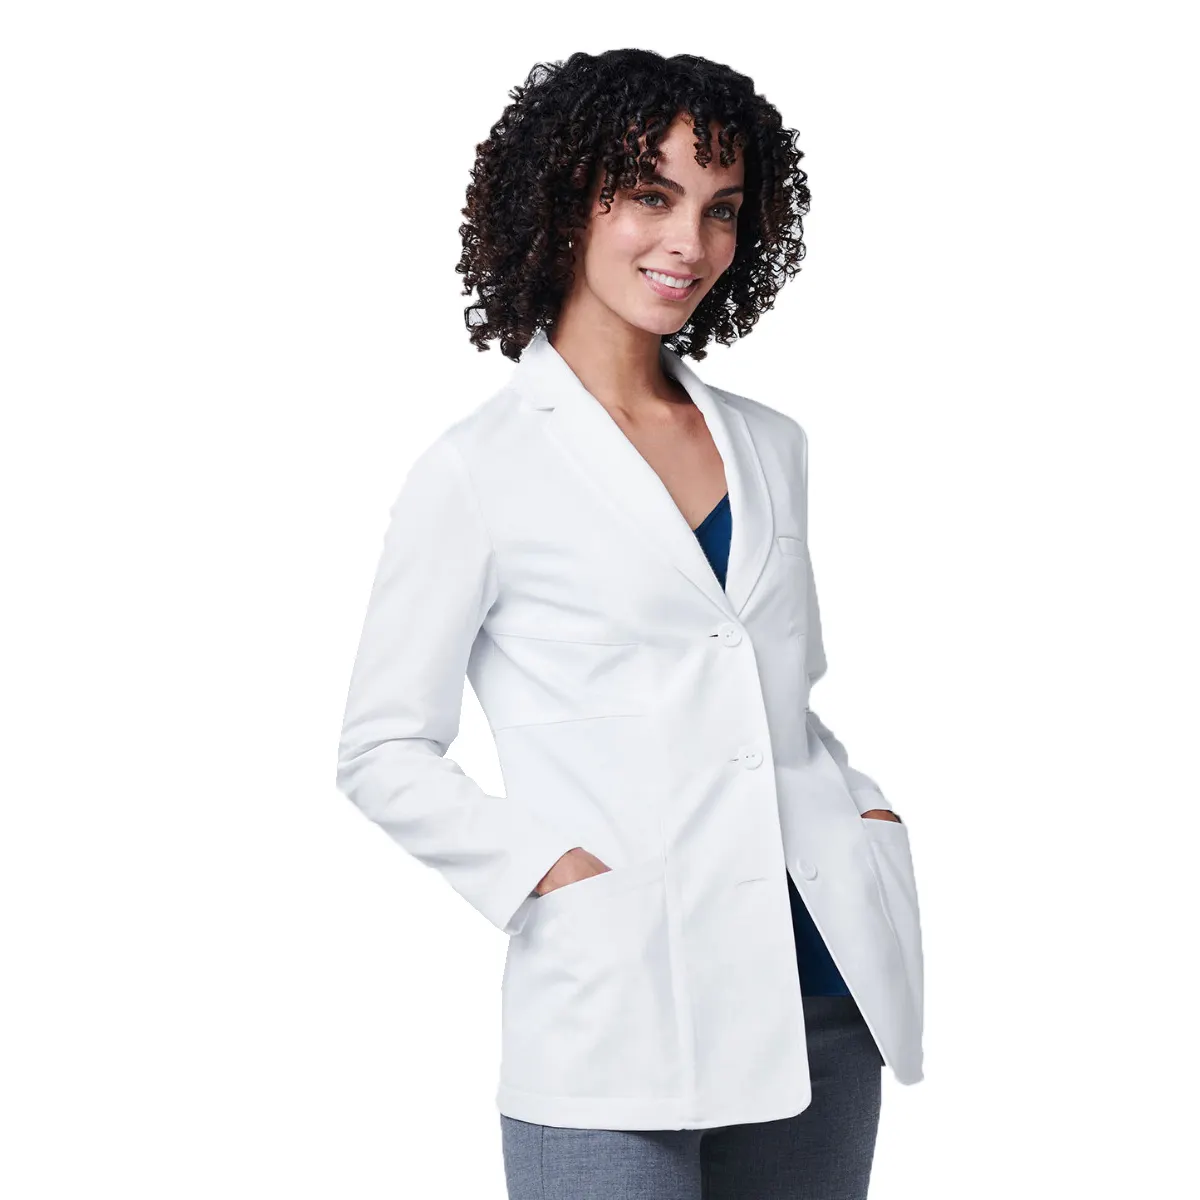 معطف موحد طبي للممرضات، لباس مخابر للمستشفيات، عالي الجودة، رخيص الثمن، للنساء